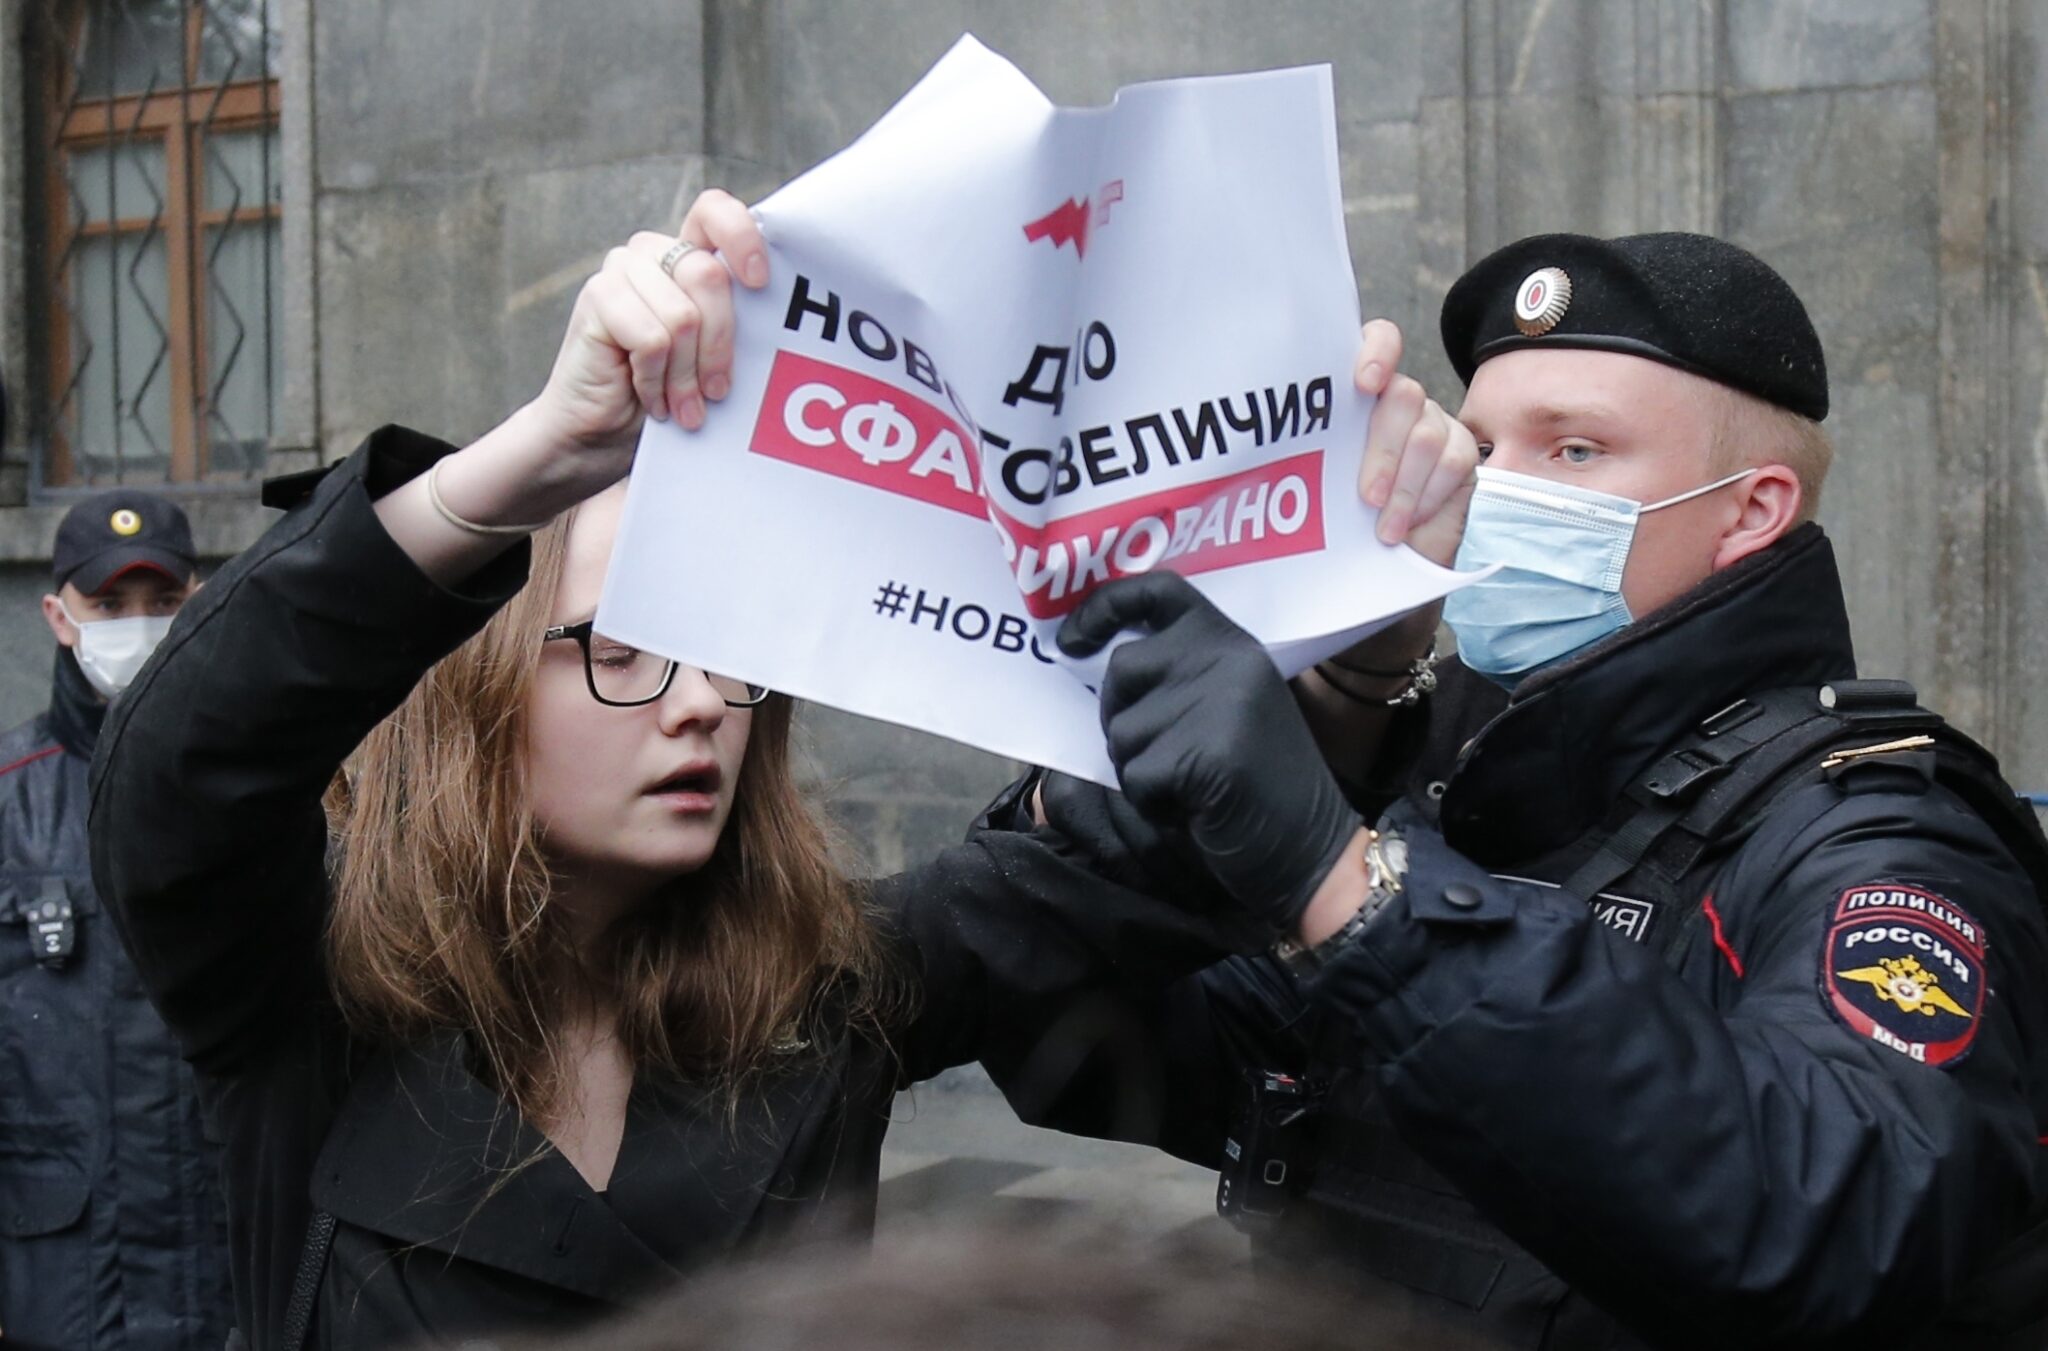 Полиция задерживает одного из участников пикета в поддержку фигурантов по делу «Нового величия». Фото Alexander Zemlianichenko/AP/Scanpix/Leta